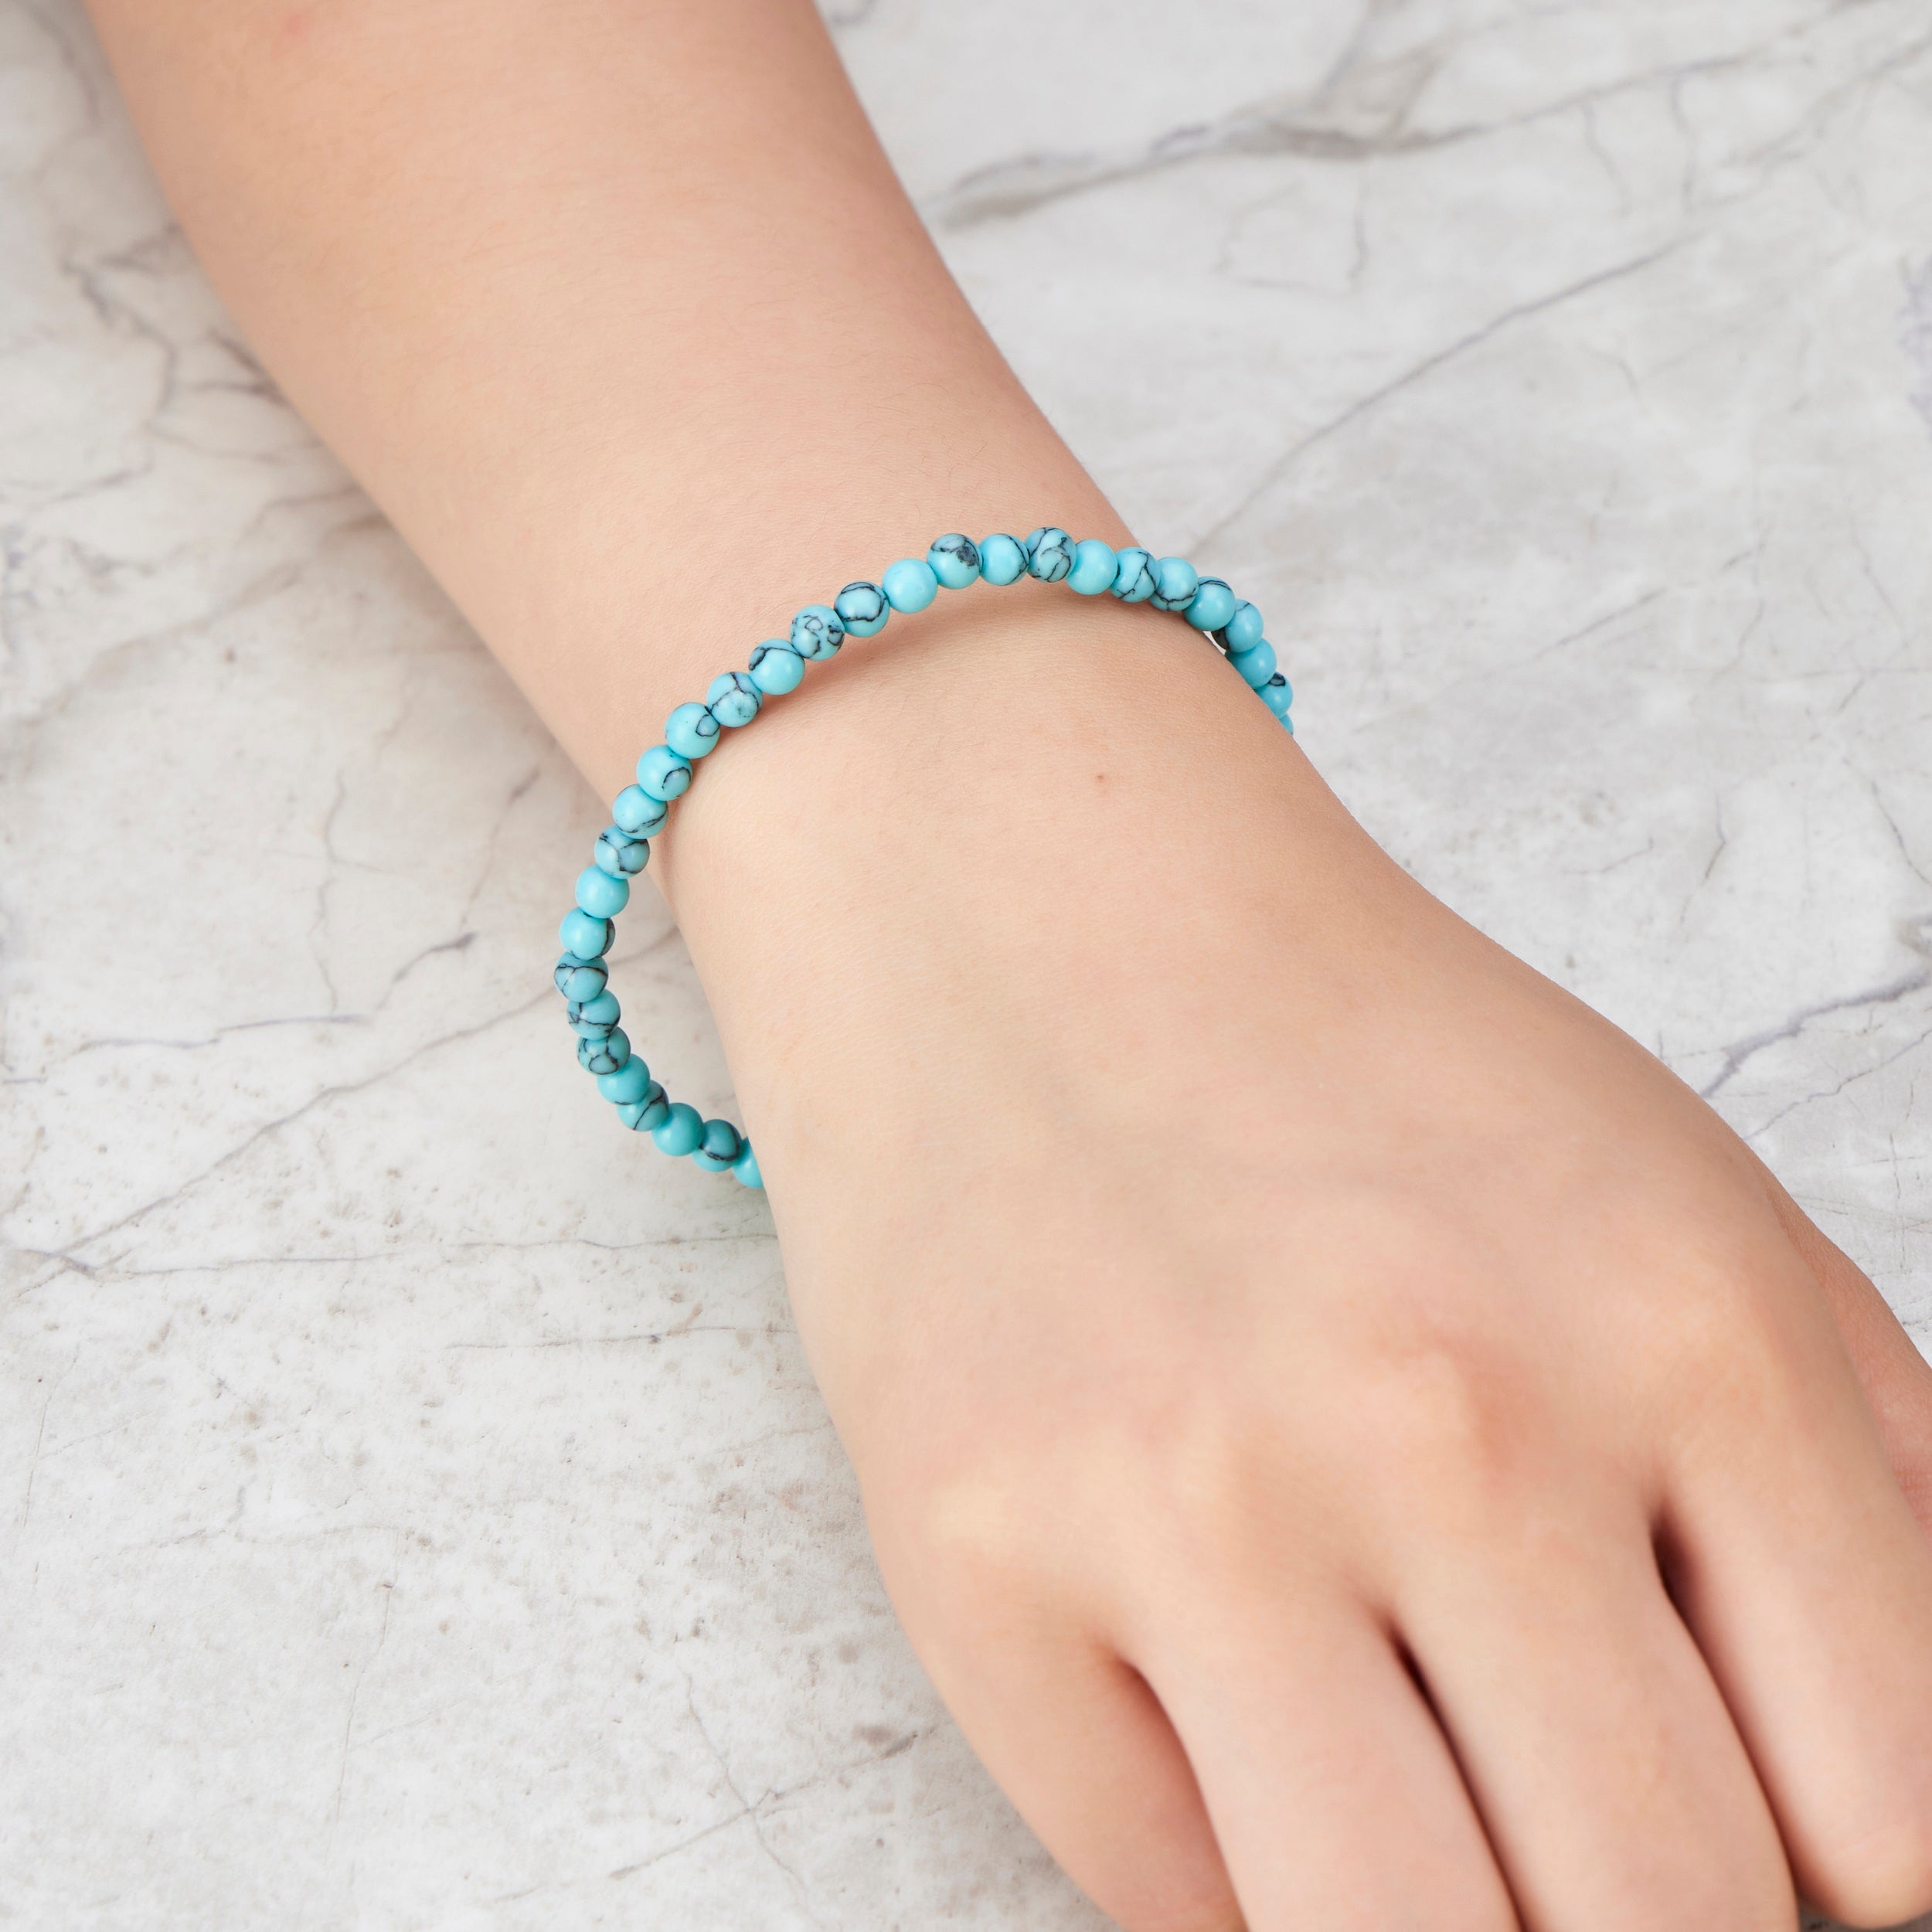 Synthetic Turquoise Mini Beaded Gemstone Stretch Bracelet